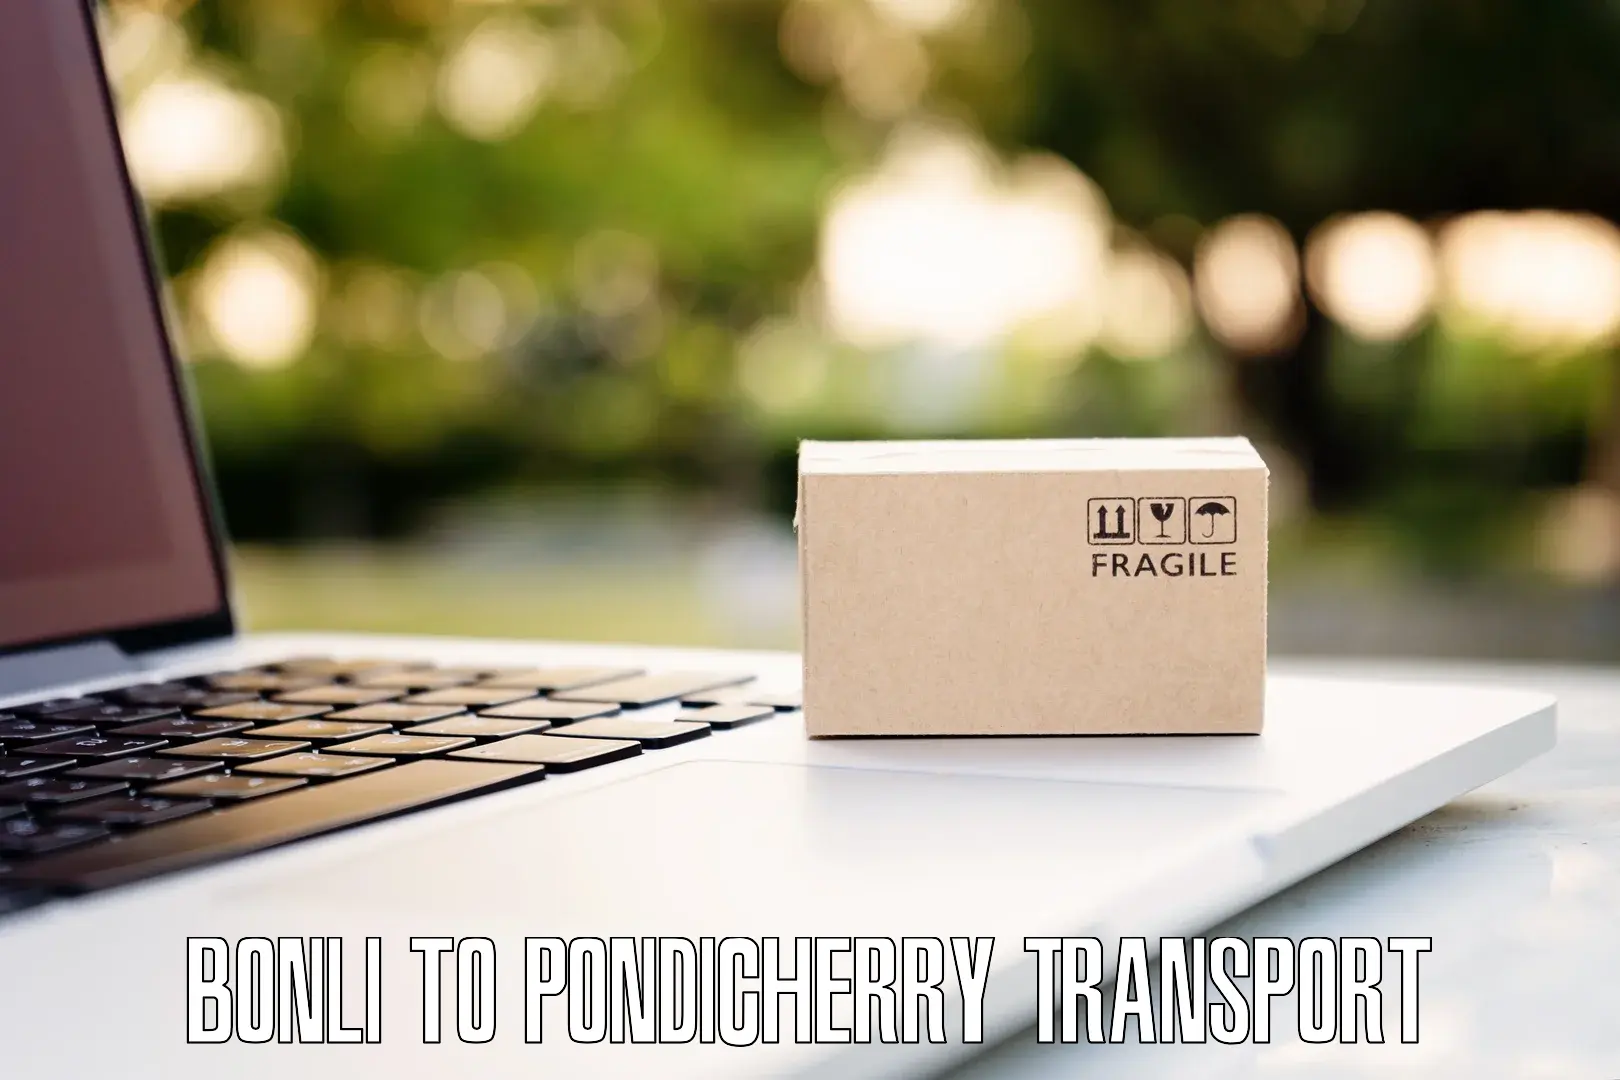 Transport services Bonli to Pondicherry University